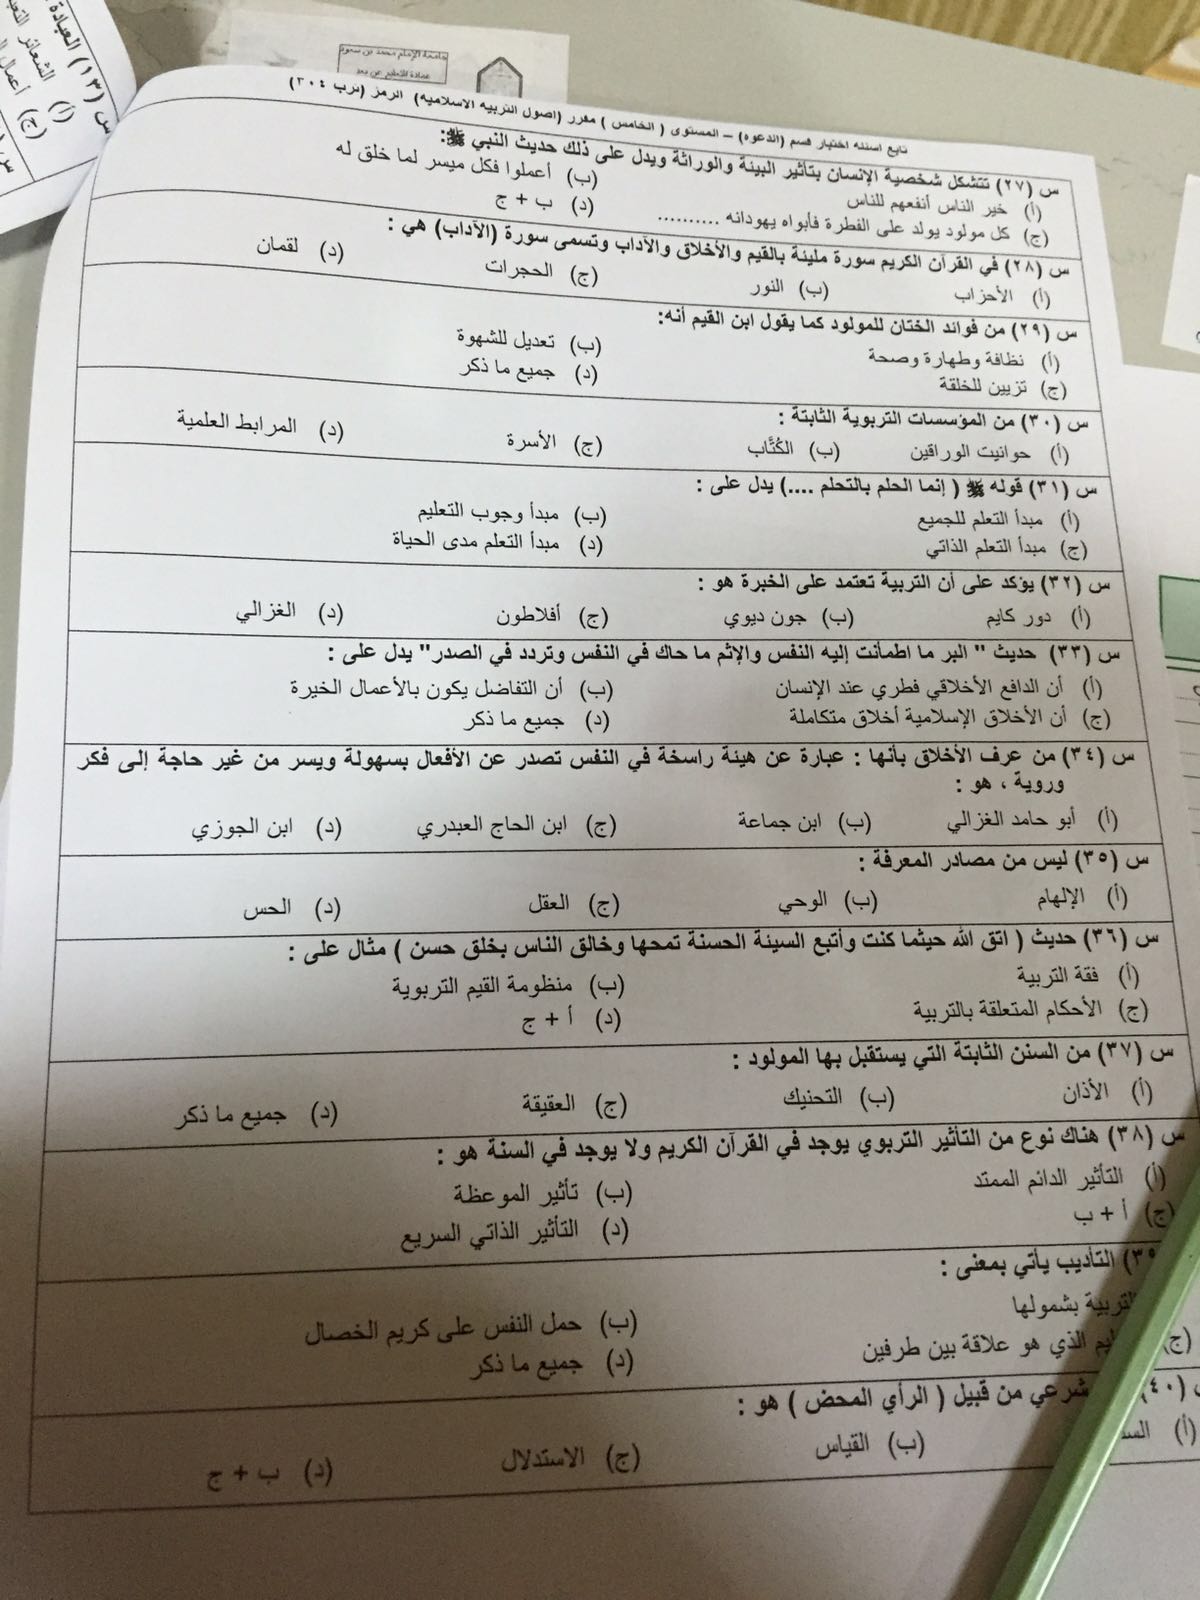 اختبار أصول التربية الإسلامية ترب 304